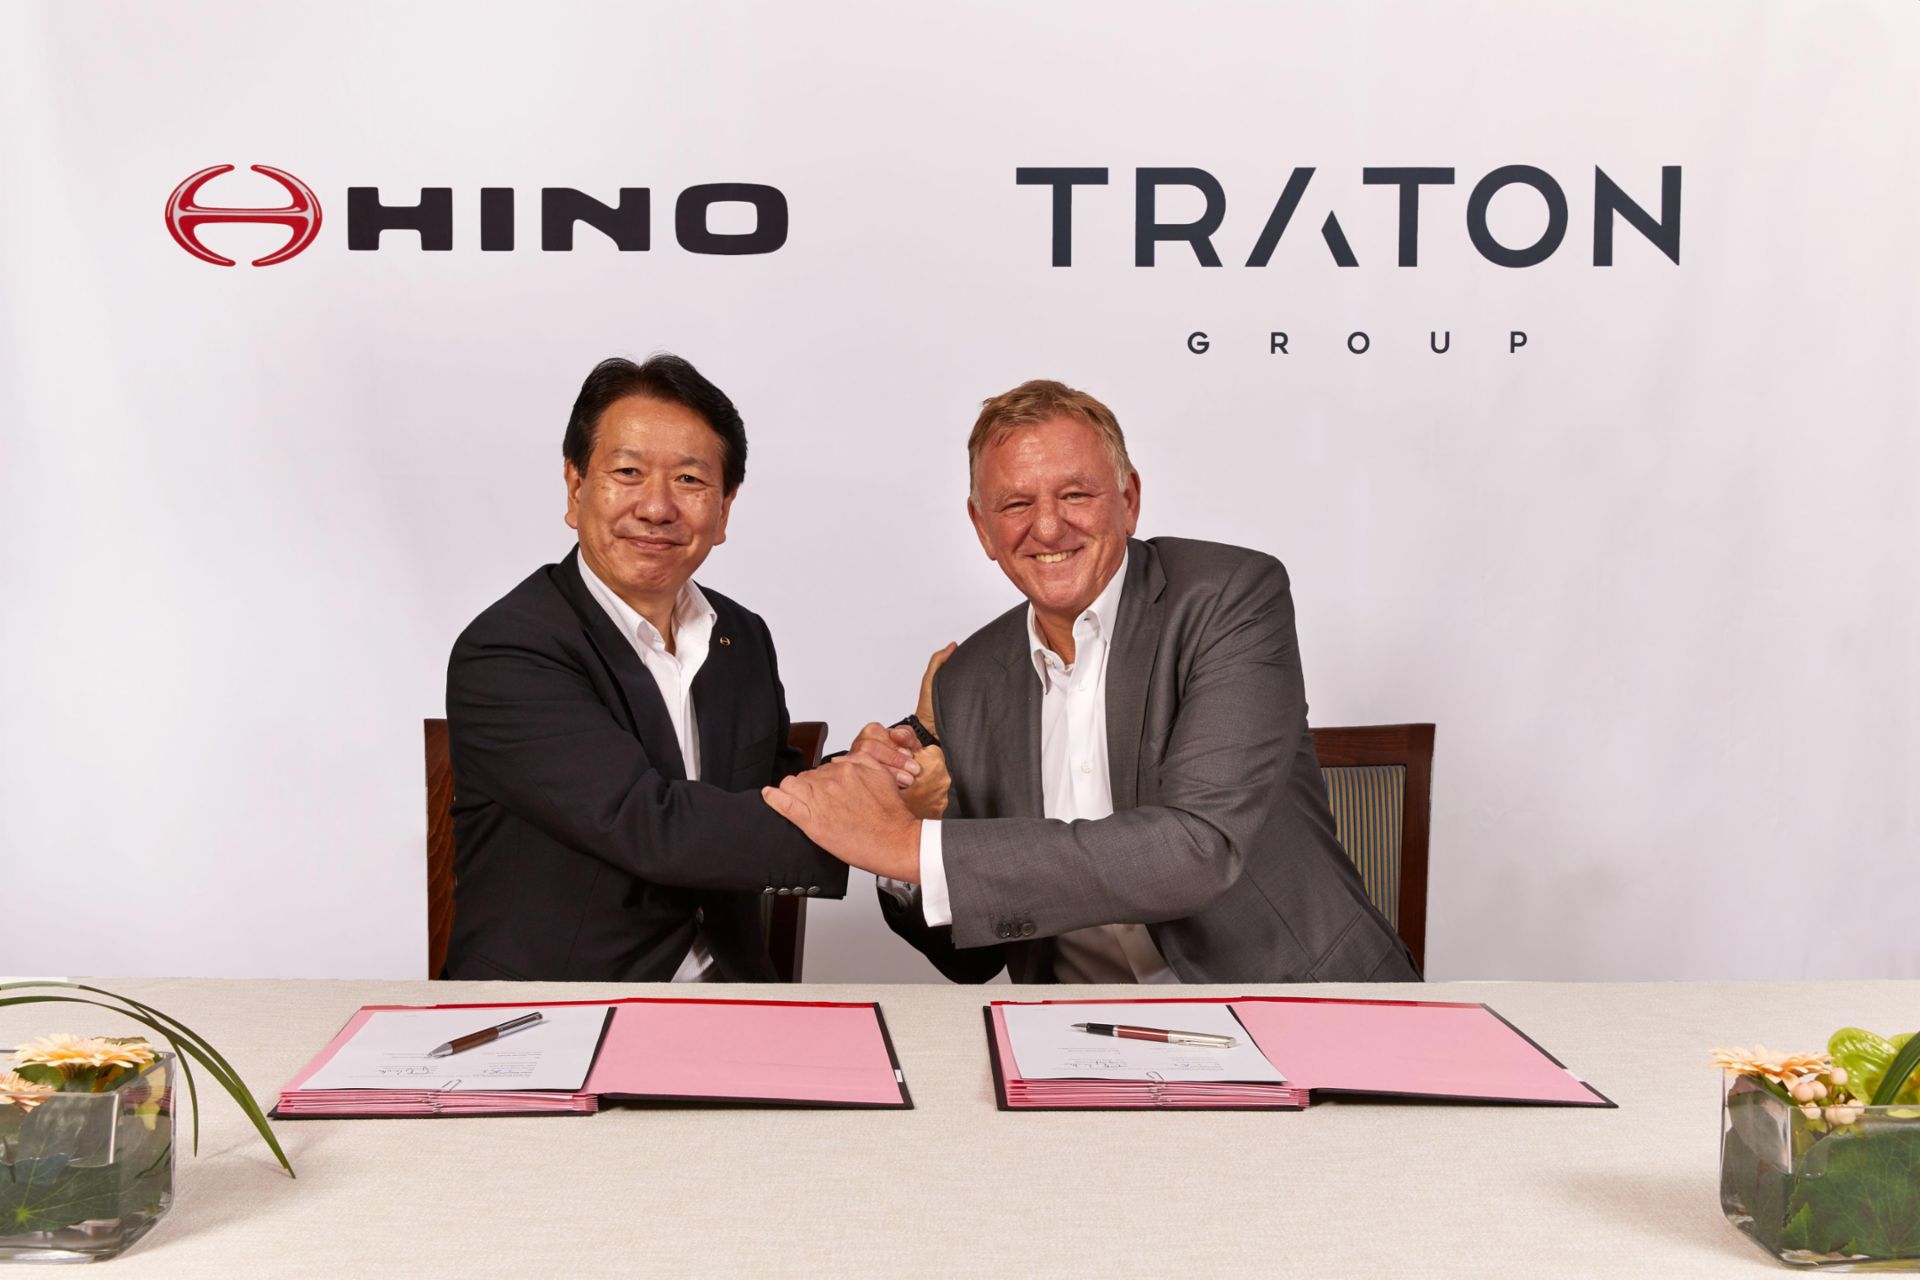 (links) Yoshio Shimo, President & CEO von Hino Motors, Ltd.
(rechts) Andreas Renschler, Vorstandsvorsitzender der TRATON AG und Mitglied des Vorstands der Volkswagen AG mit Verantwortung für den Geschäftsbereich Nutzfahrzeuge
                 